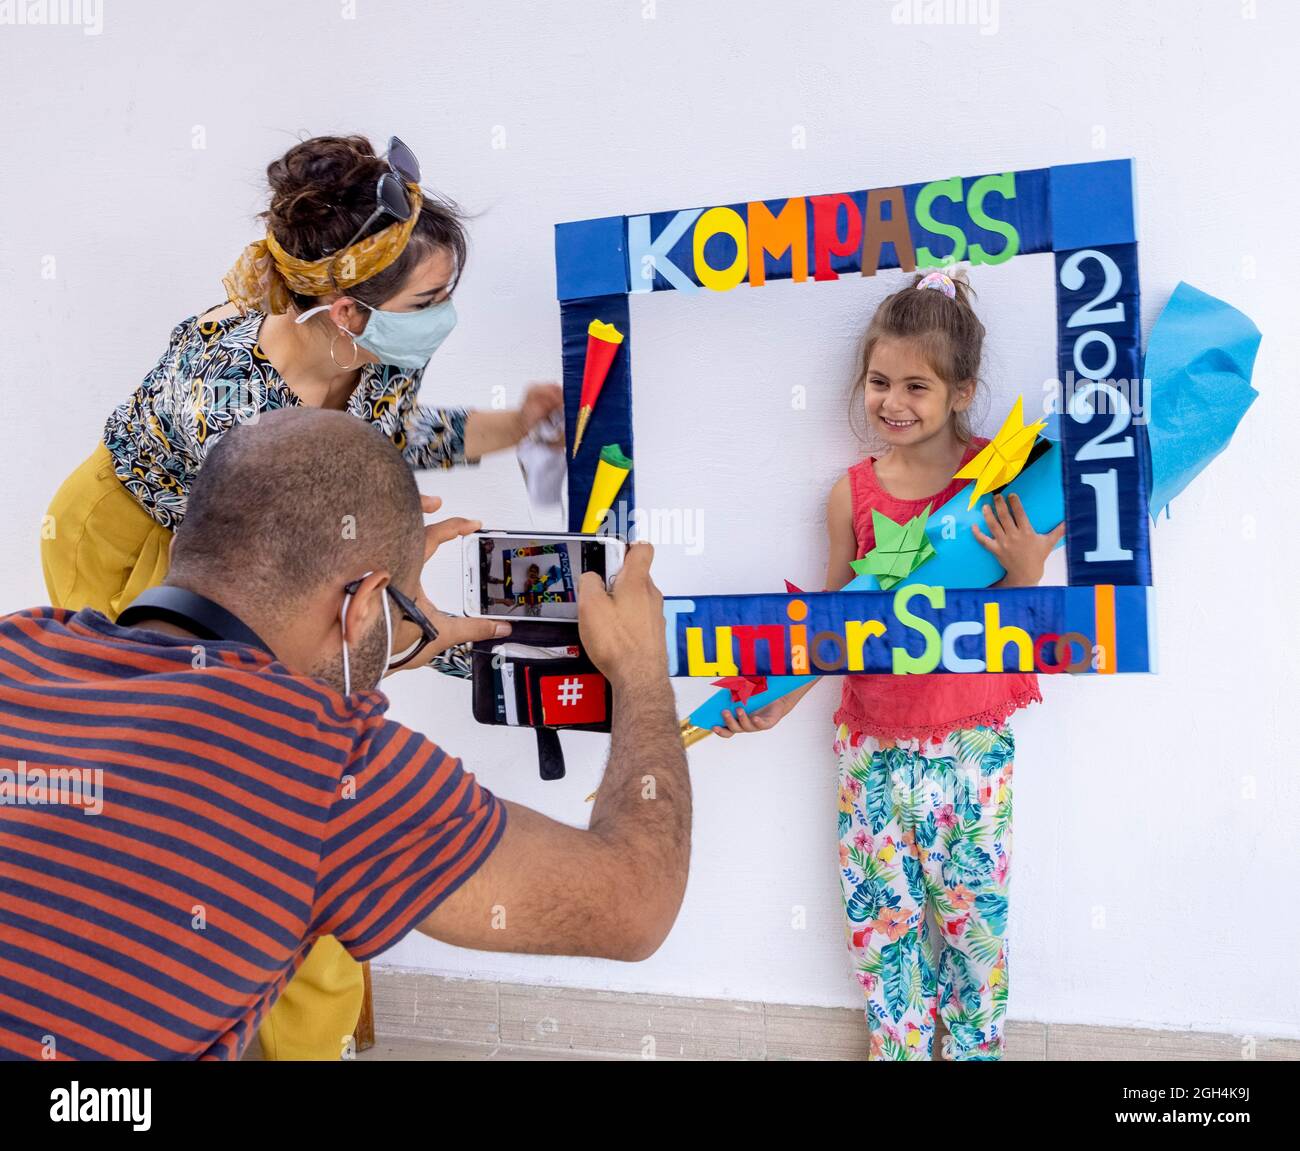 I genitori fotografano la ragazza che riceve il cono della scuola tedesca tradizionale il primo giorno della scuola, la scuola internazionale di Kompass, il Cairo, Egitto Foto Stock